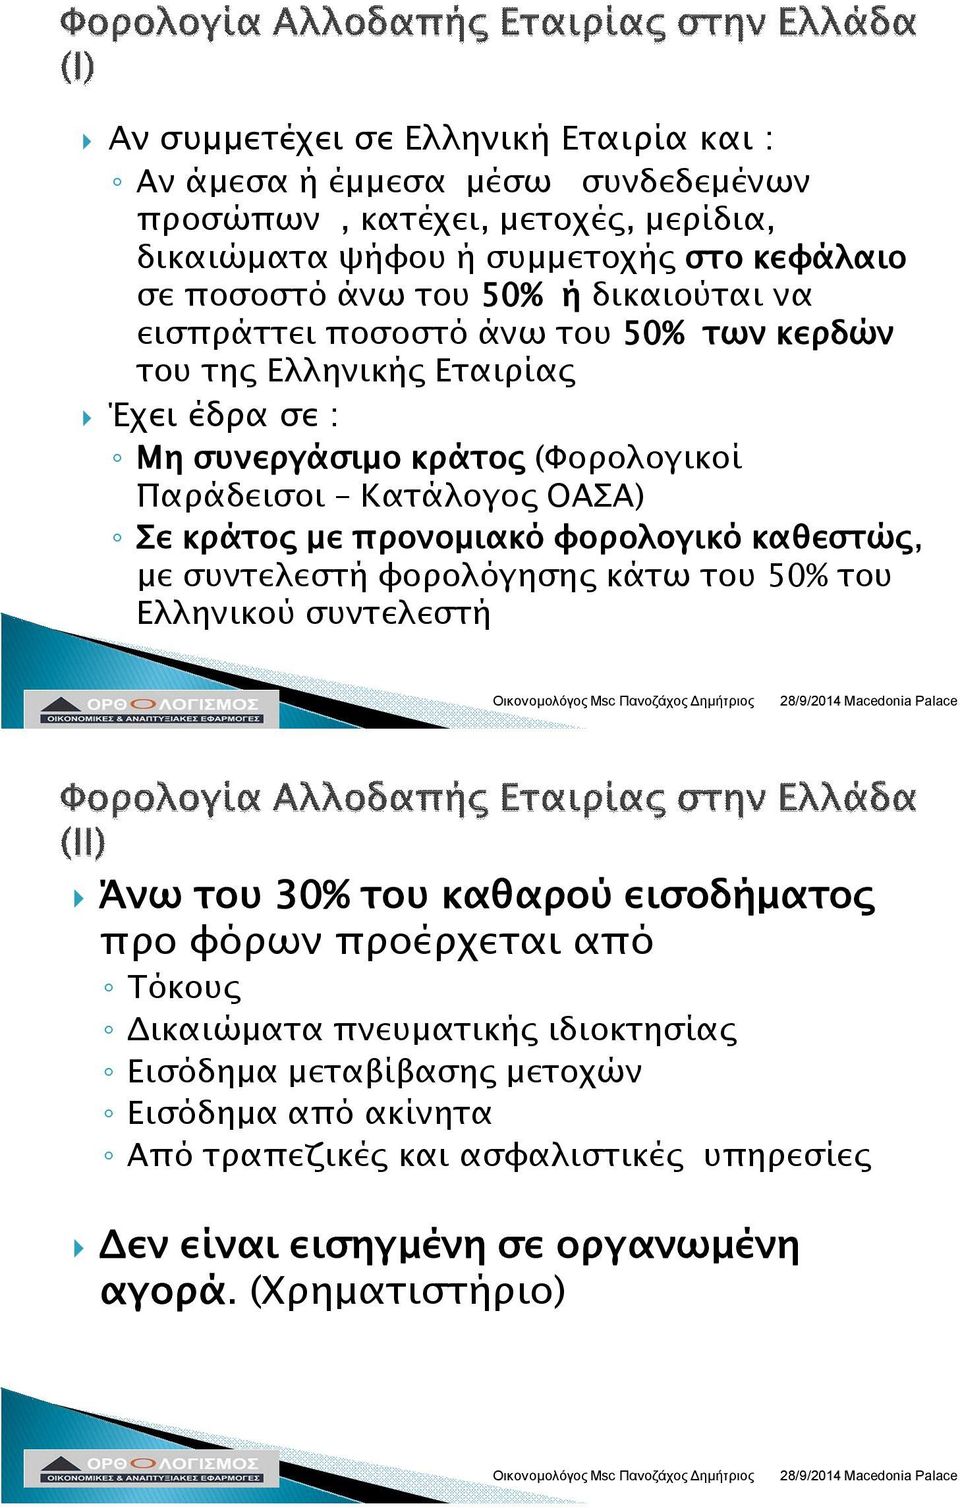 με προνομιακό φορολογικό καθεστώς, με συντελεστή φορολόγησης κάτω του 50% του Ελληνικού συντελεστή Άνω του 30% του καθαρού εισοδήματος προ φόρων προέρχεται από Τόκους